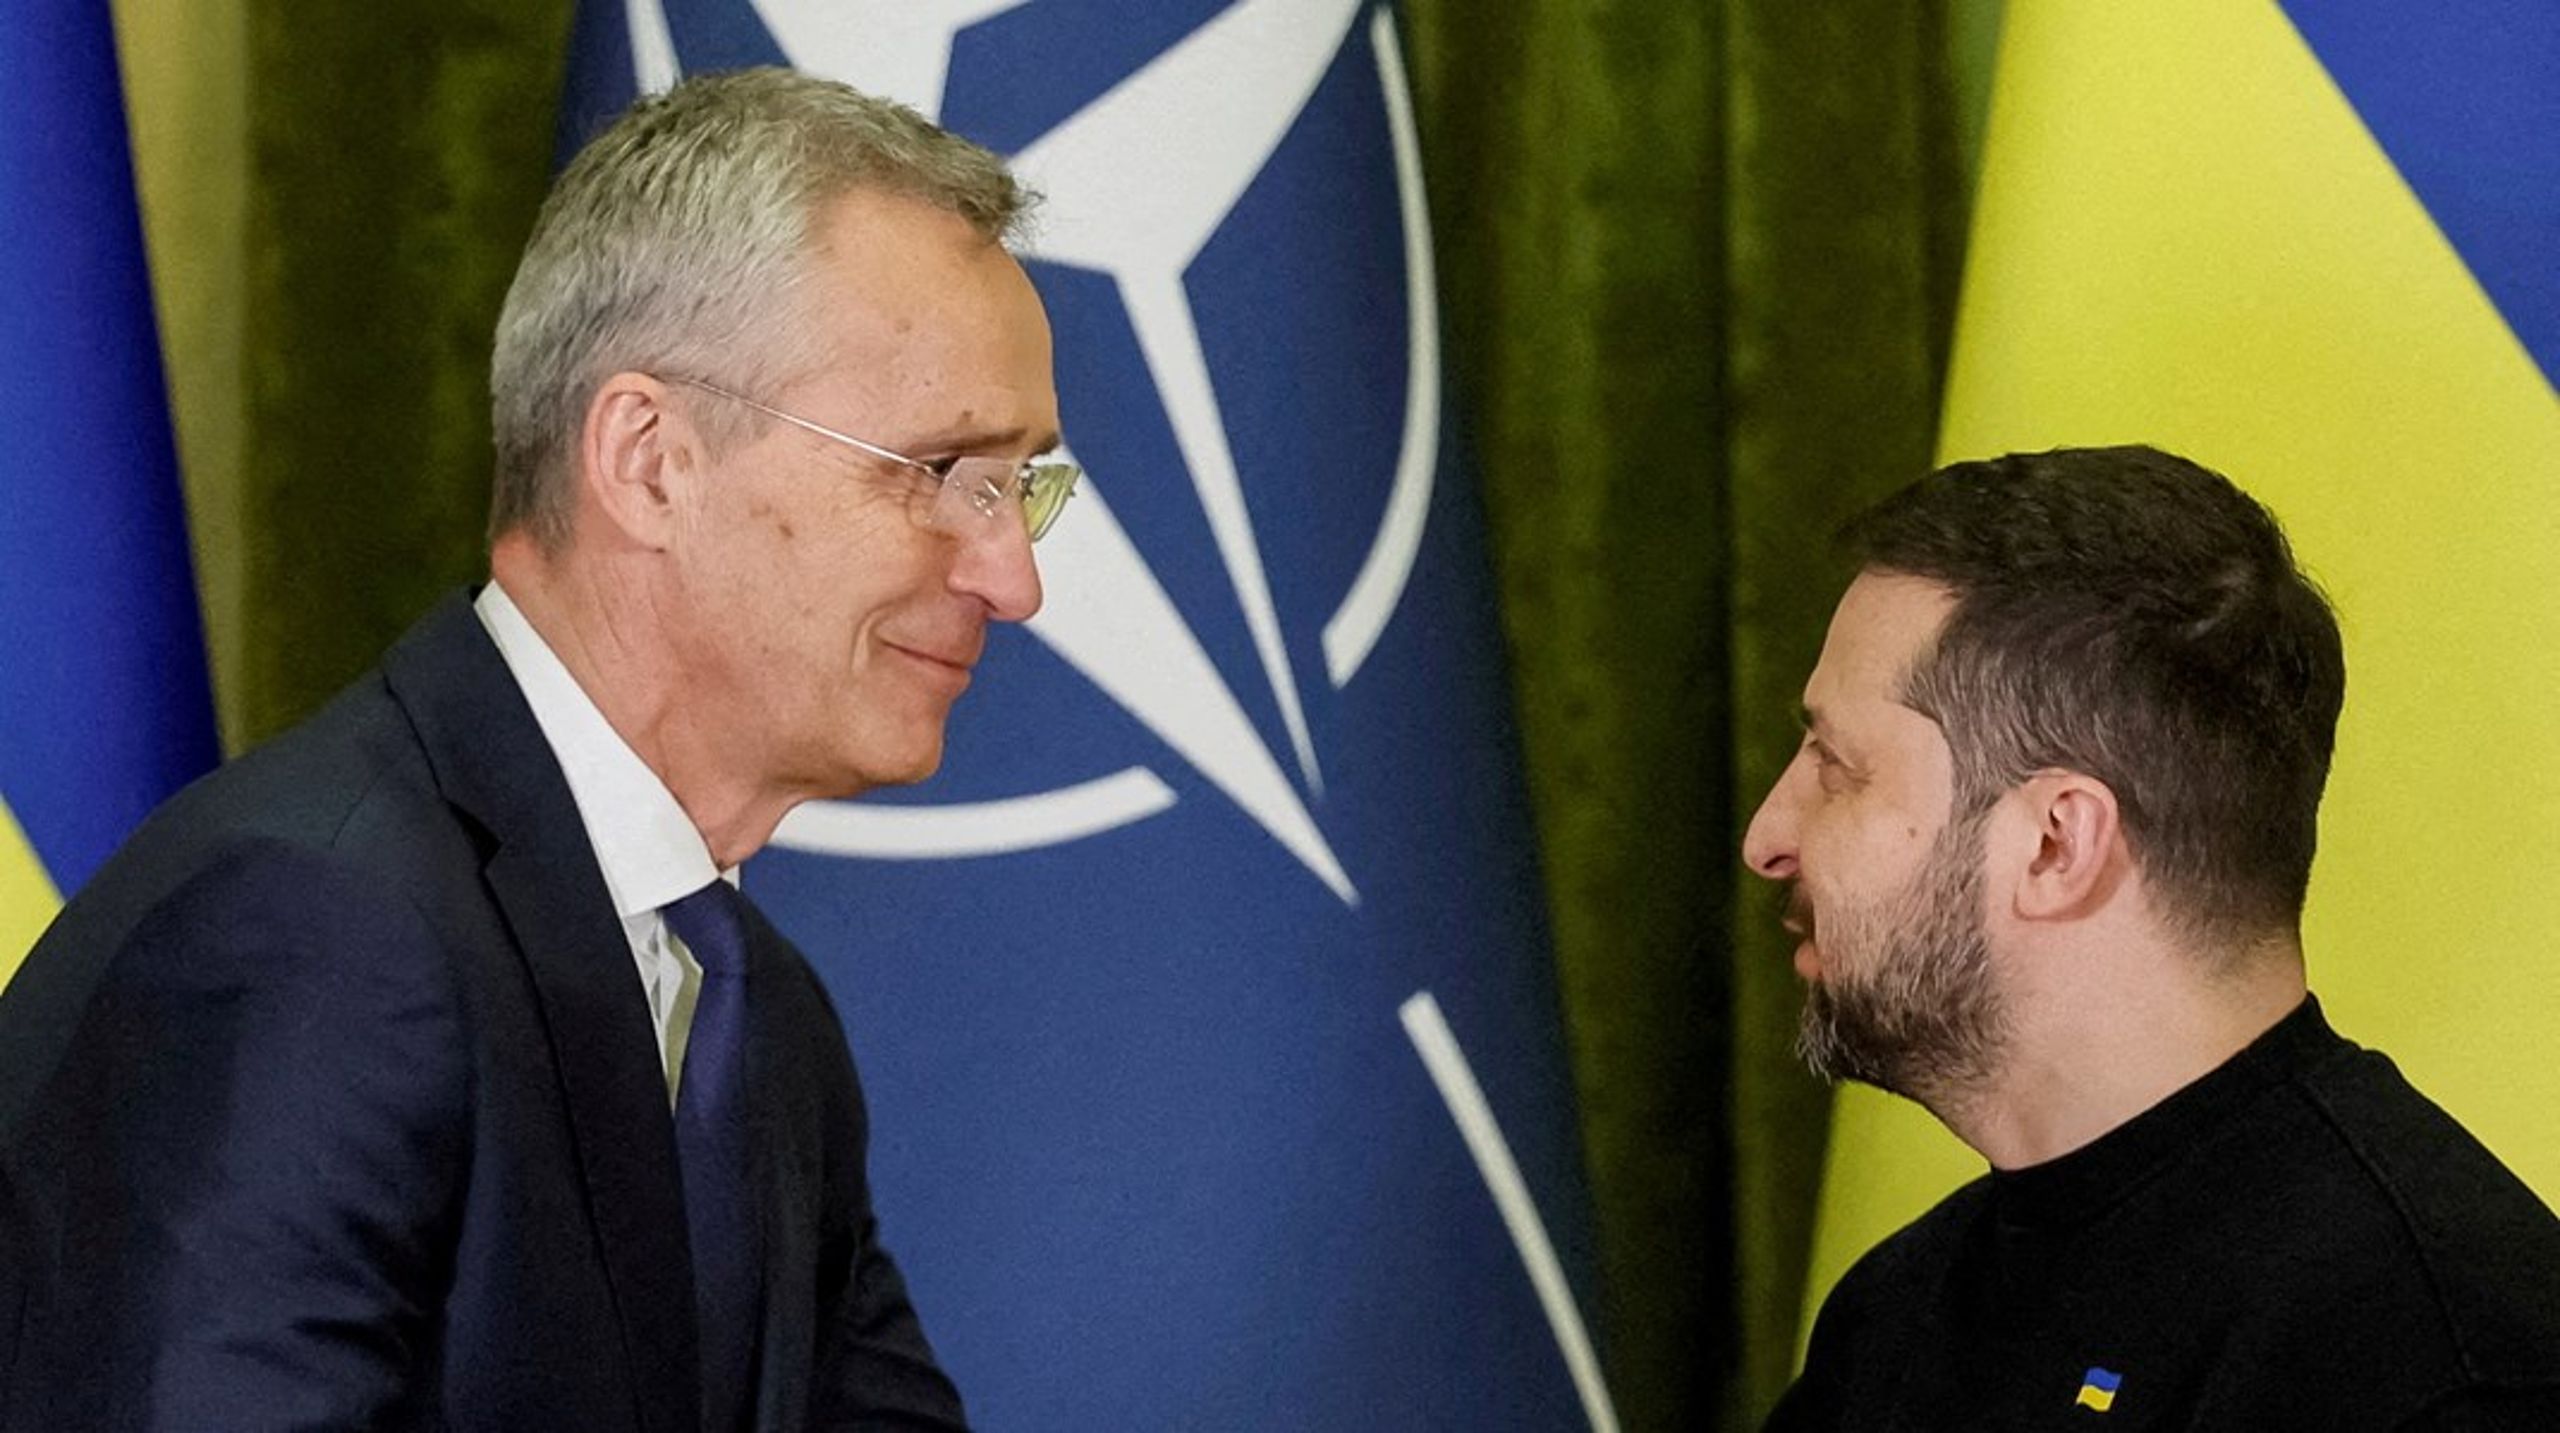 Et av de store spørsmålene i forkant av Nato-toppmøtet i Vilnius, er hvor langt den militære alliansen er beredt til å strekke seg for å garantere sikkerheten til Ukraina. Mens noen land presser på for å diskutere ukrainsk medlemskap allerede nå, ønsker andre land&nbsp;–&nbsp;deriblant Tyskland&nbsp;– å vente med&nbsp;en slik diskusjon til krigen er over. Bildet er fra april 2023, da Nato-sjef Jens Stoltenberg besøkte den ukrainske presidenten Volodymyr Zelenskyj i Kyiv.